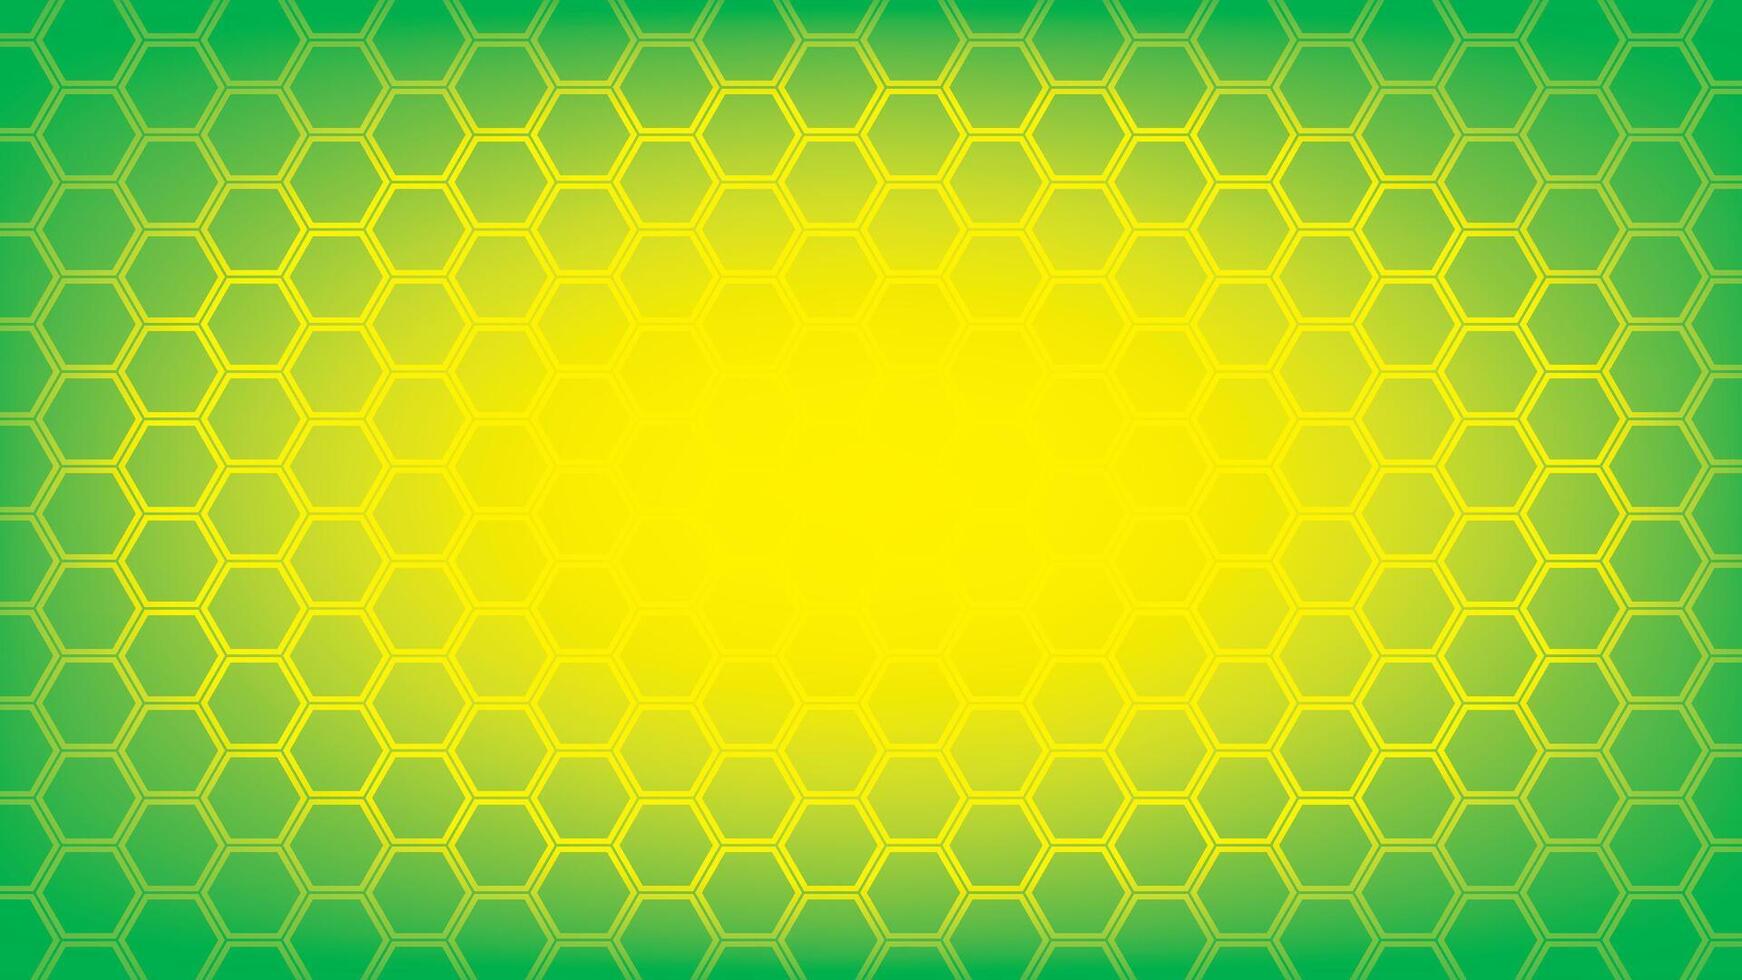 abstrakt grön och gul Färg bakgrund med hexagonal form mönster. vektor illustration.